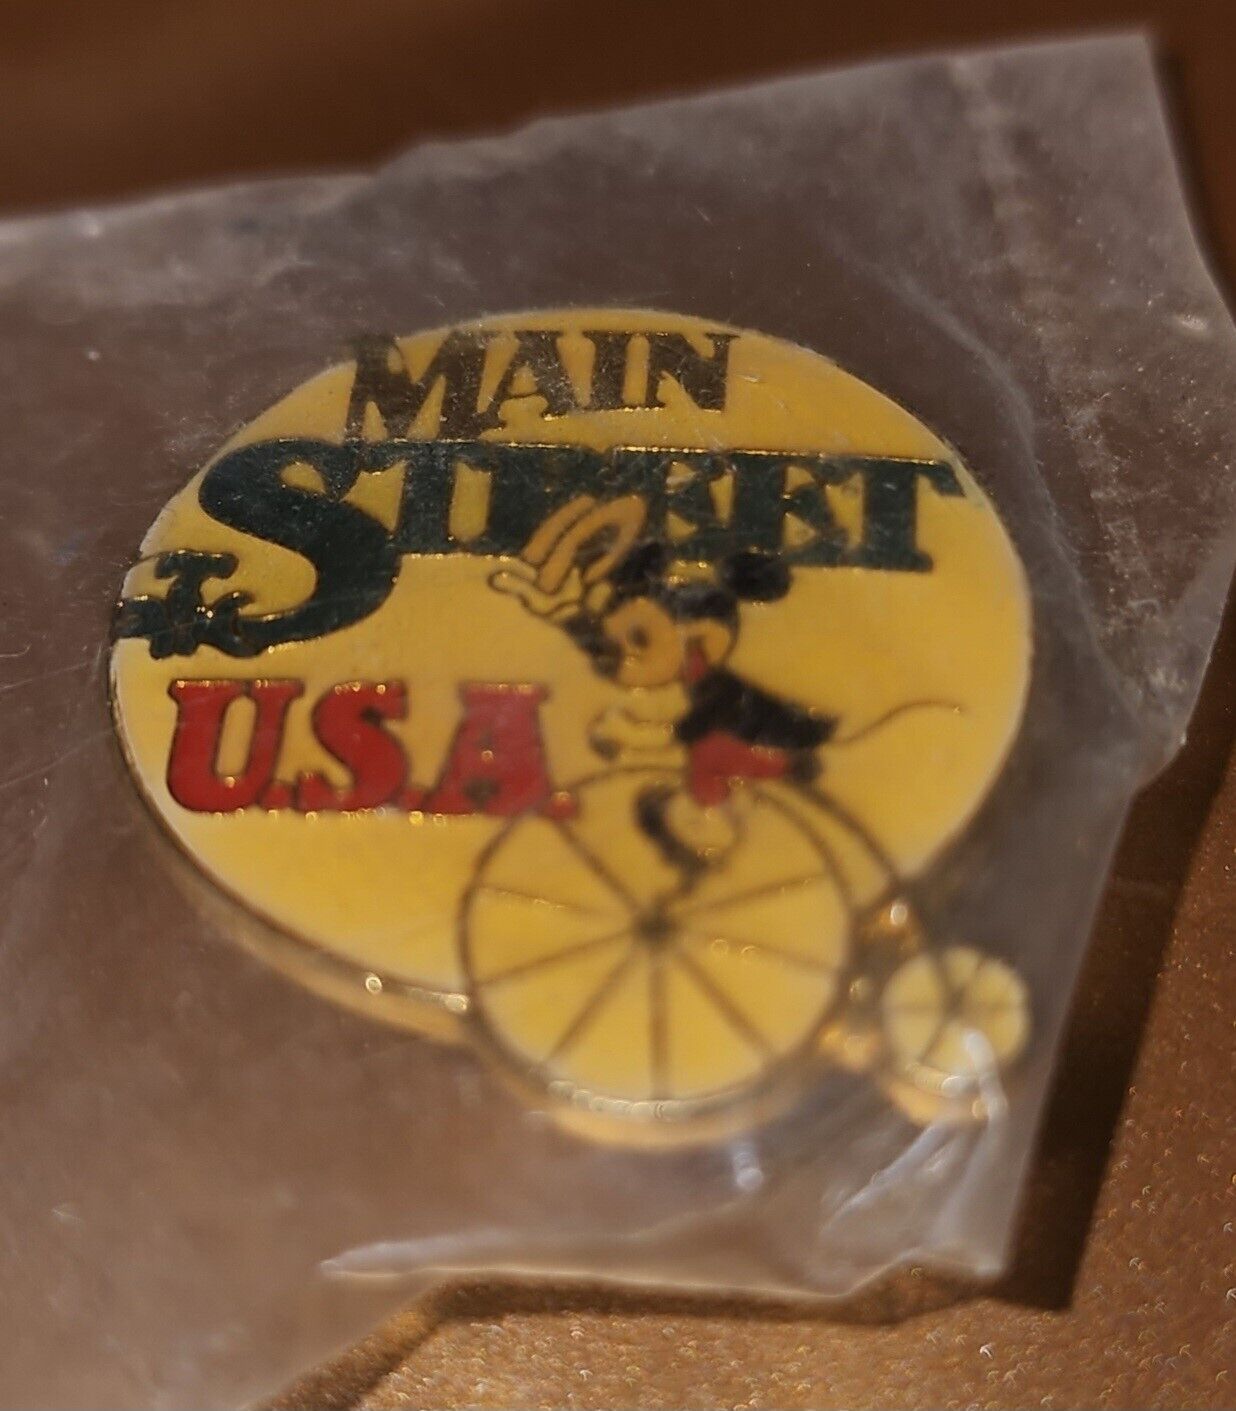 Vintage Disneyland Main Street USA pin